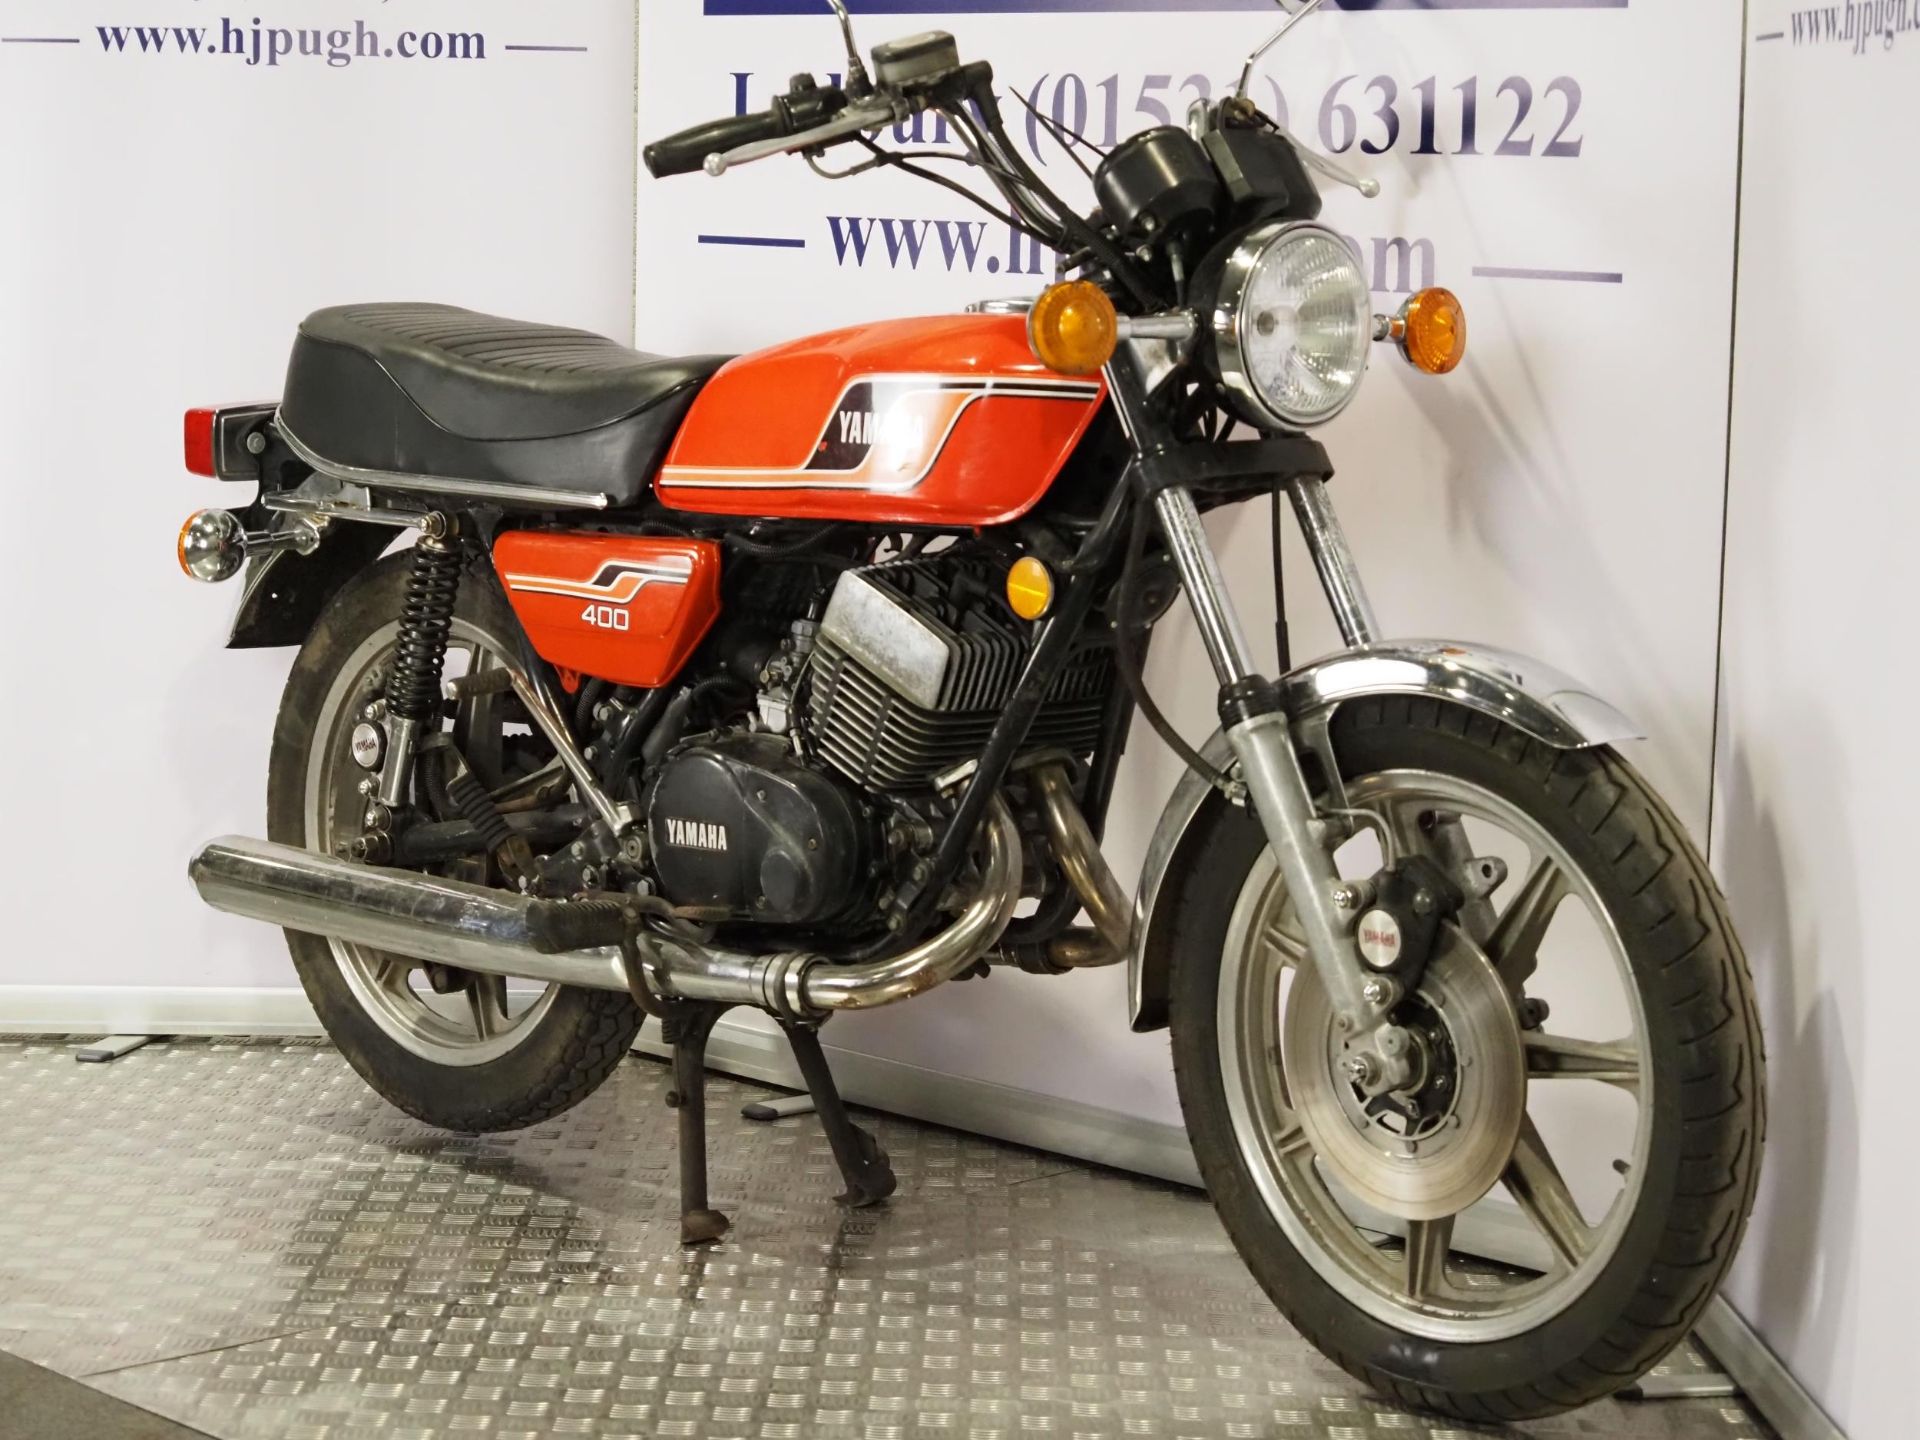 Yamaha RD400 motorcycle. 1976. 399cc. Frame No. 1A1008827 Engine No. 1A1-308468 Runs and rides. - Image 2 of 6